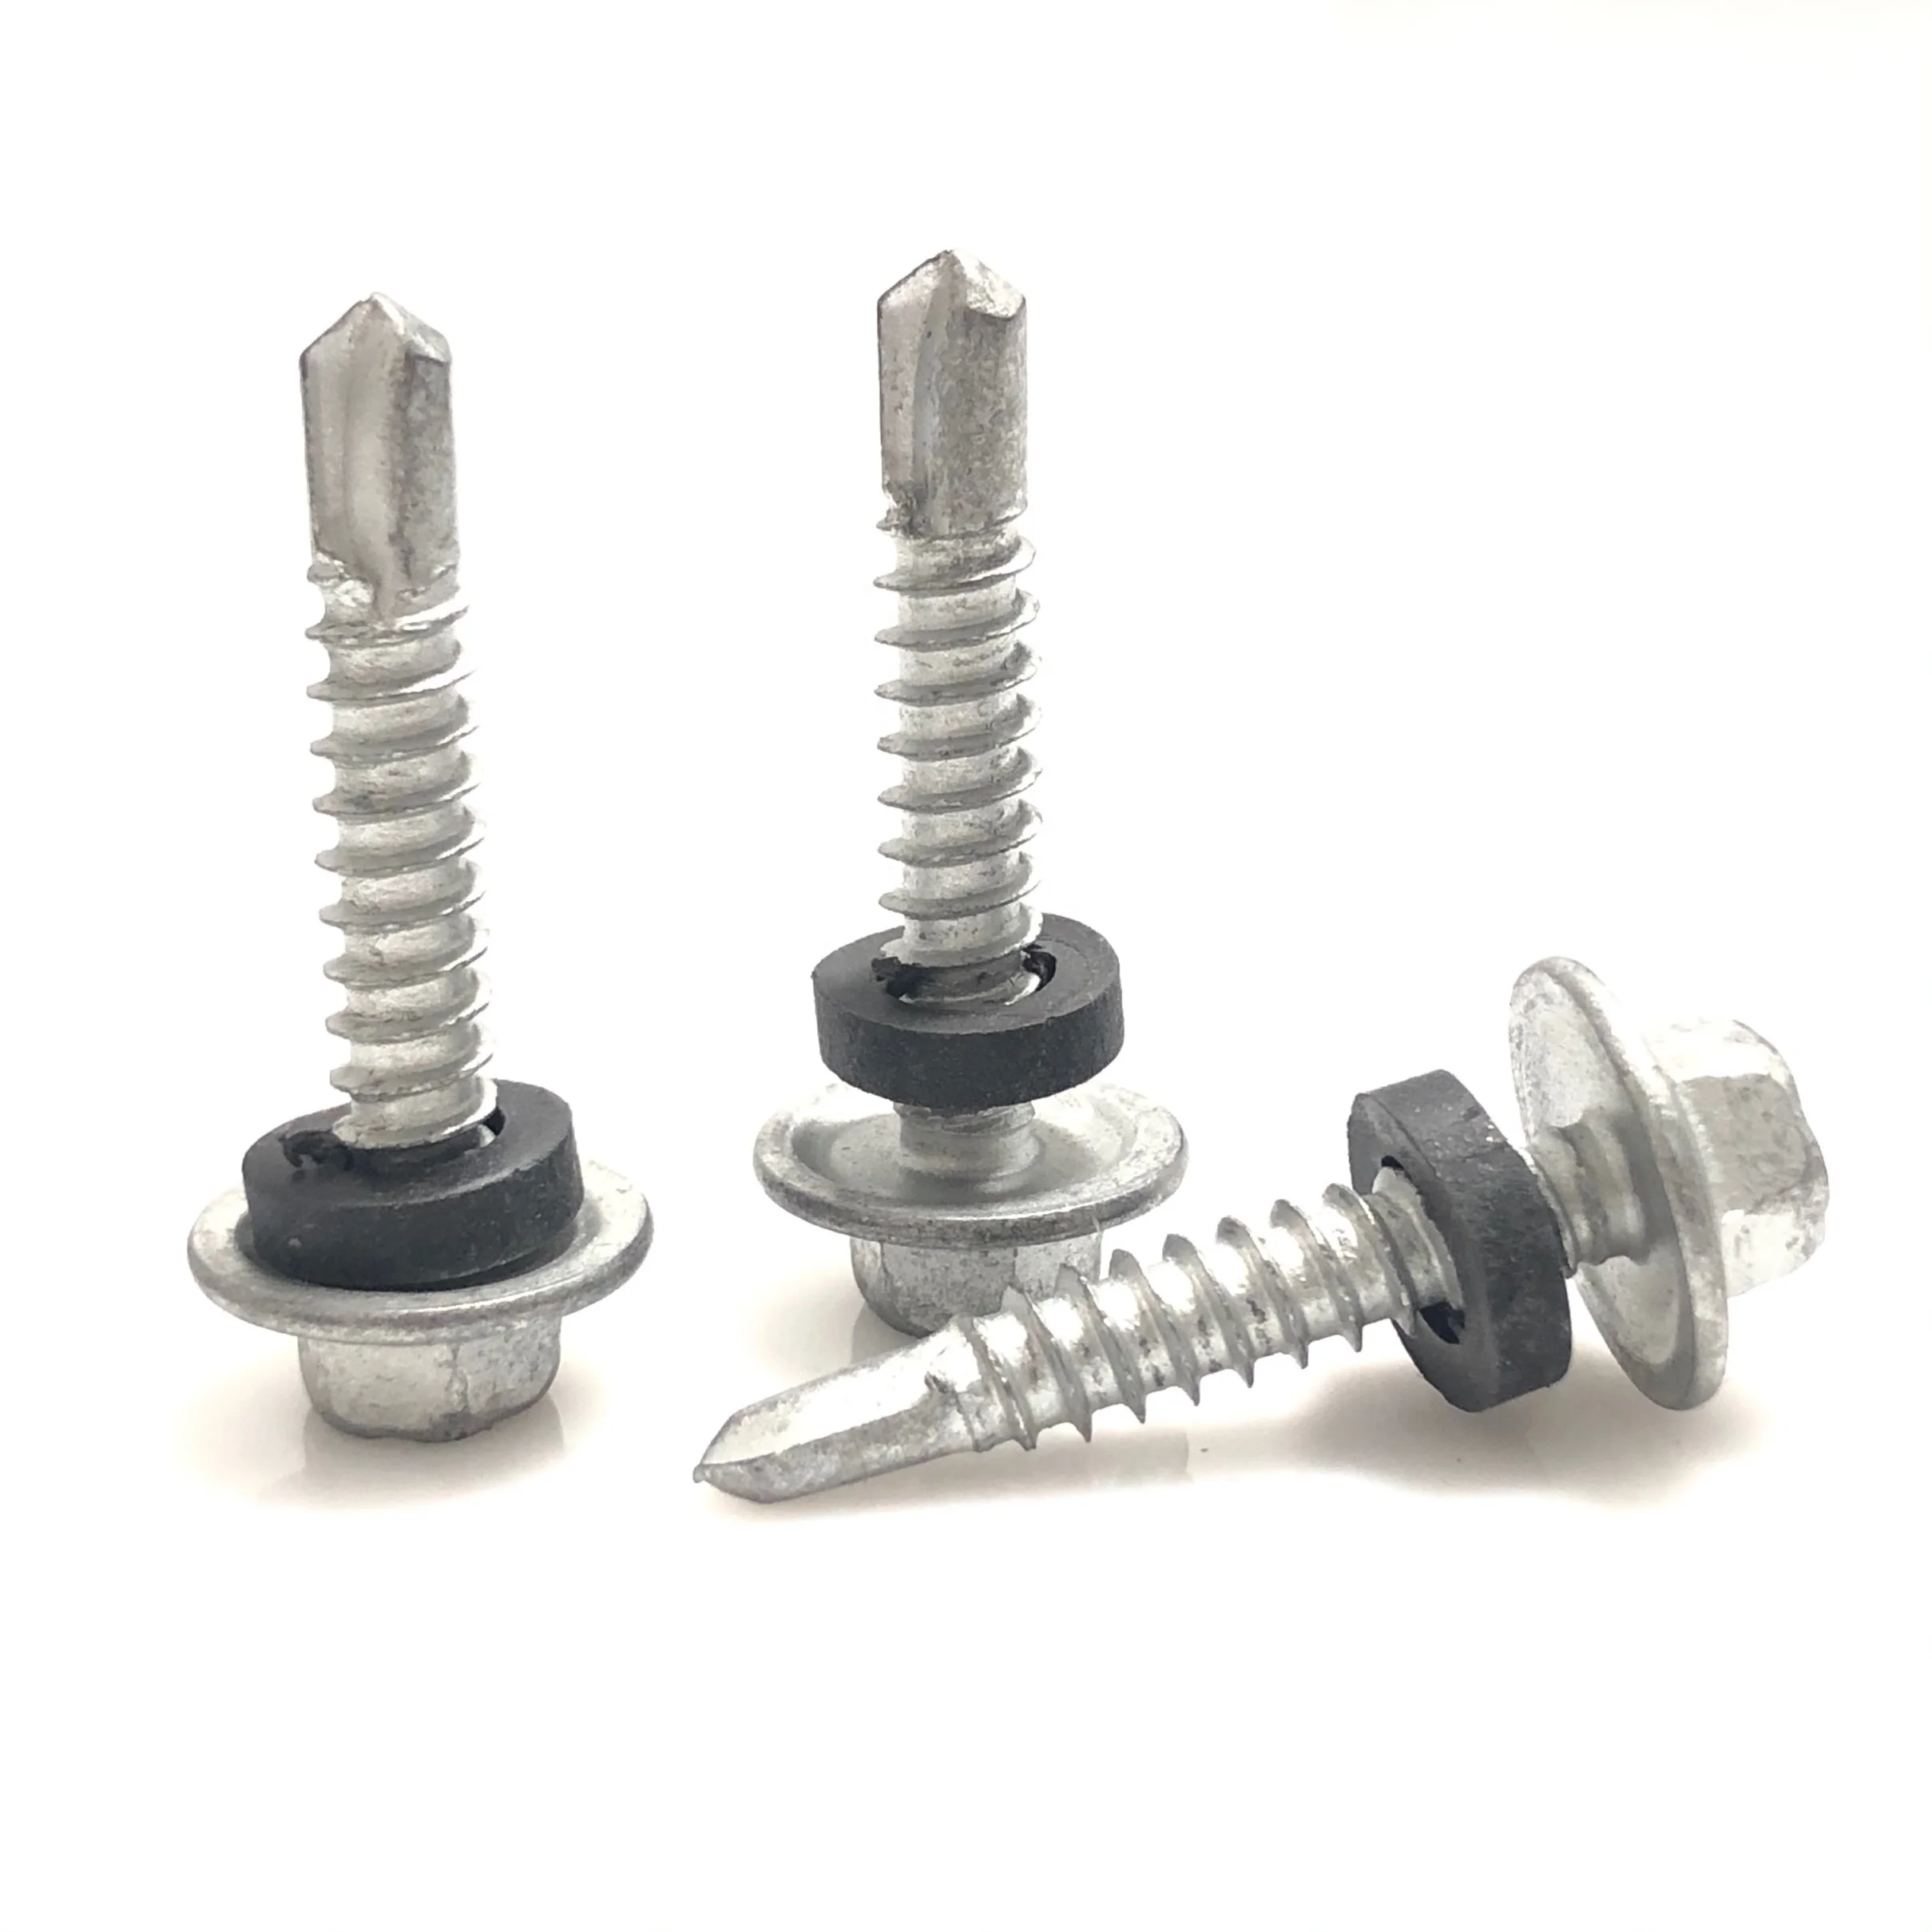 pack of 25 Tek screws self drilling screw hex head 5.5 x 25mm short drill point 